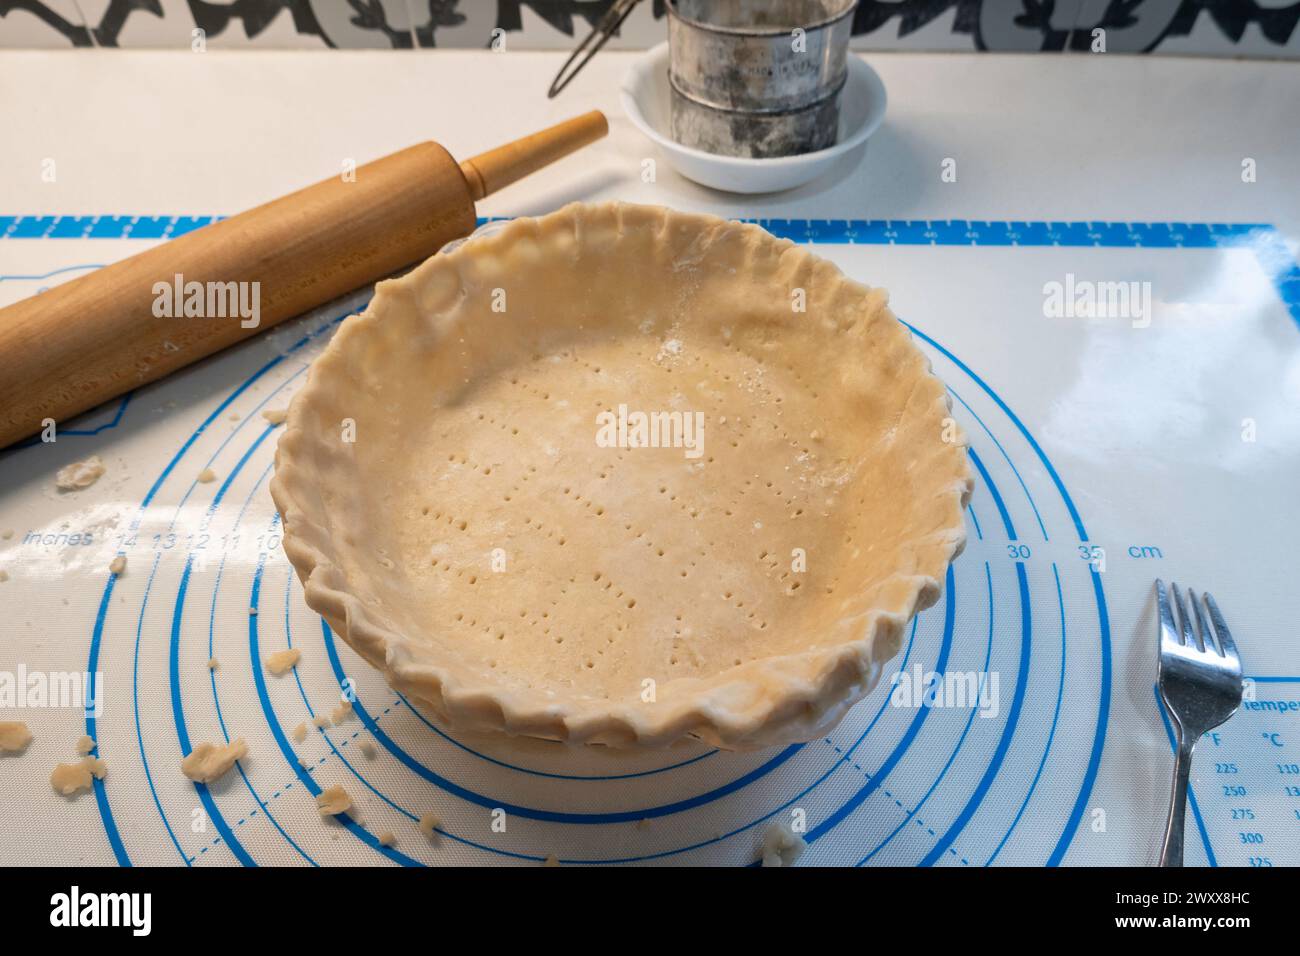 Crosta per torte o pasta sfogliata e inserita in un piatto per torte. Setaccio farina e mattarello in legno visibili. Foto Stock